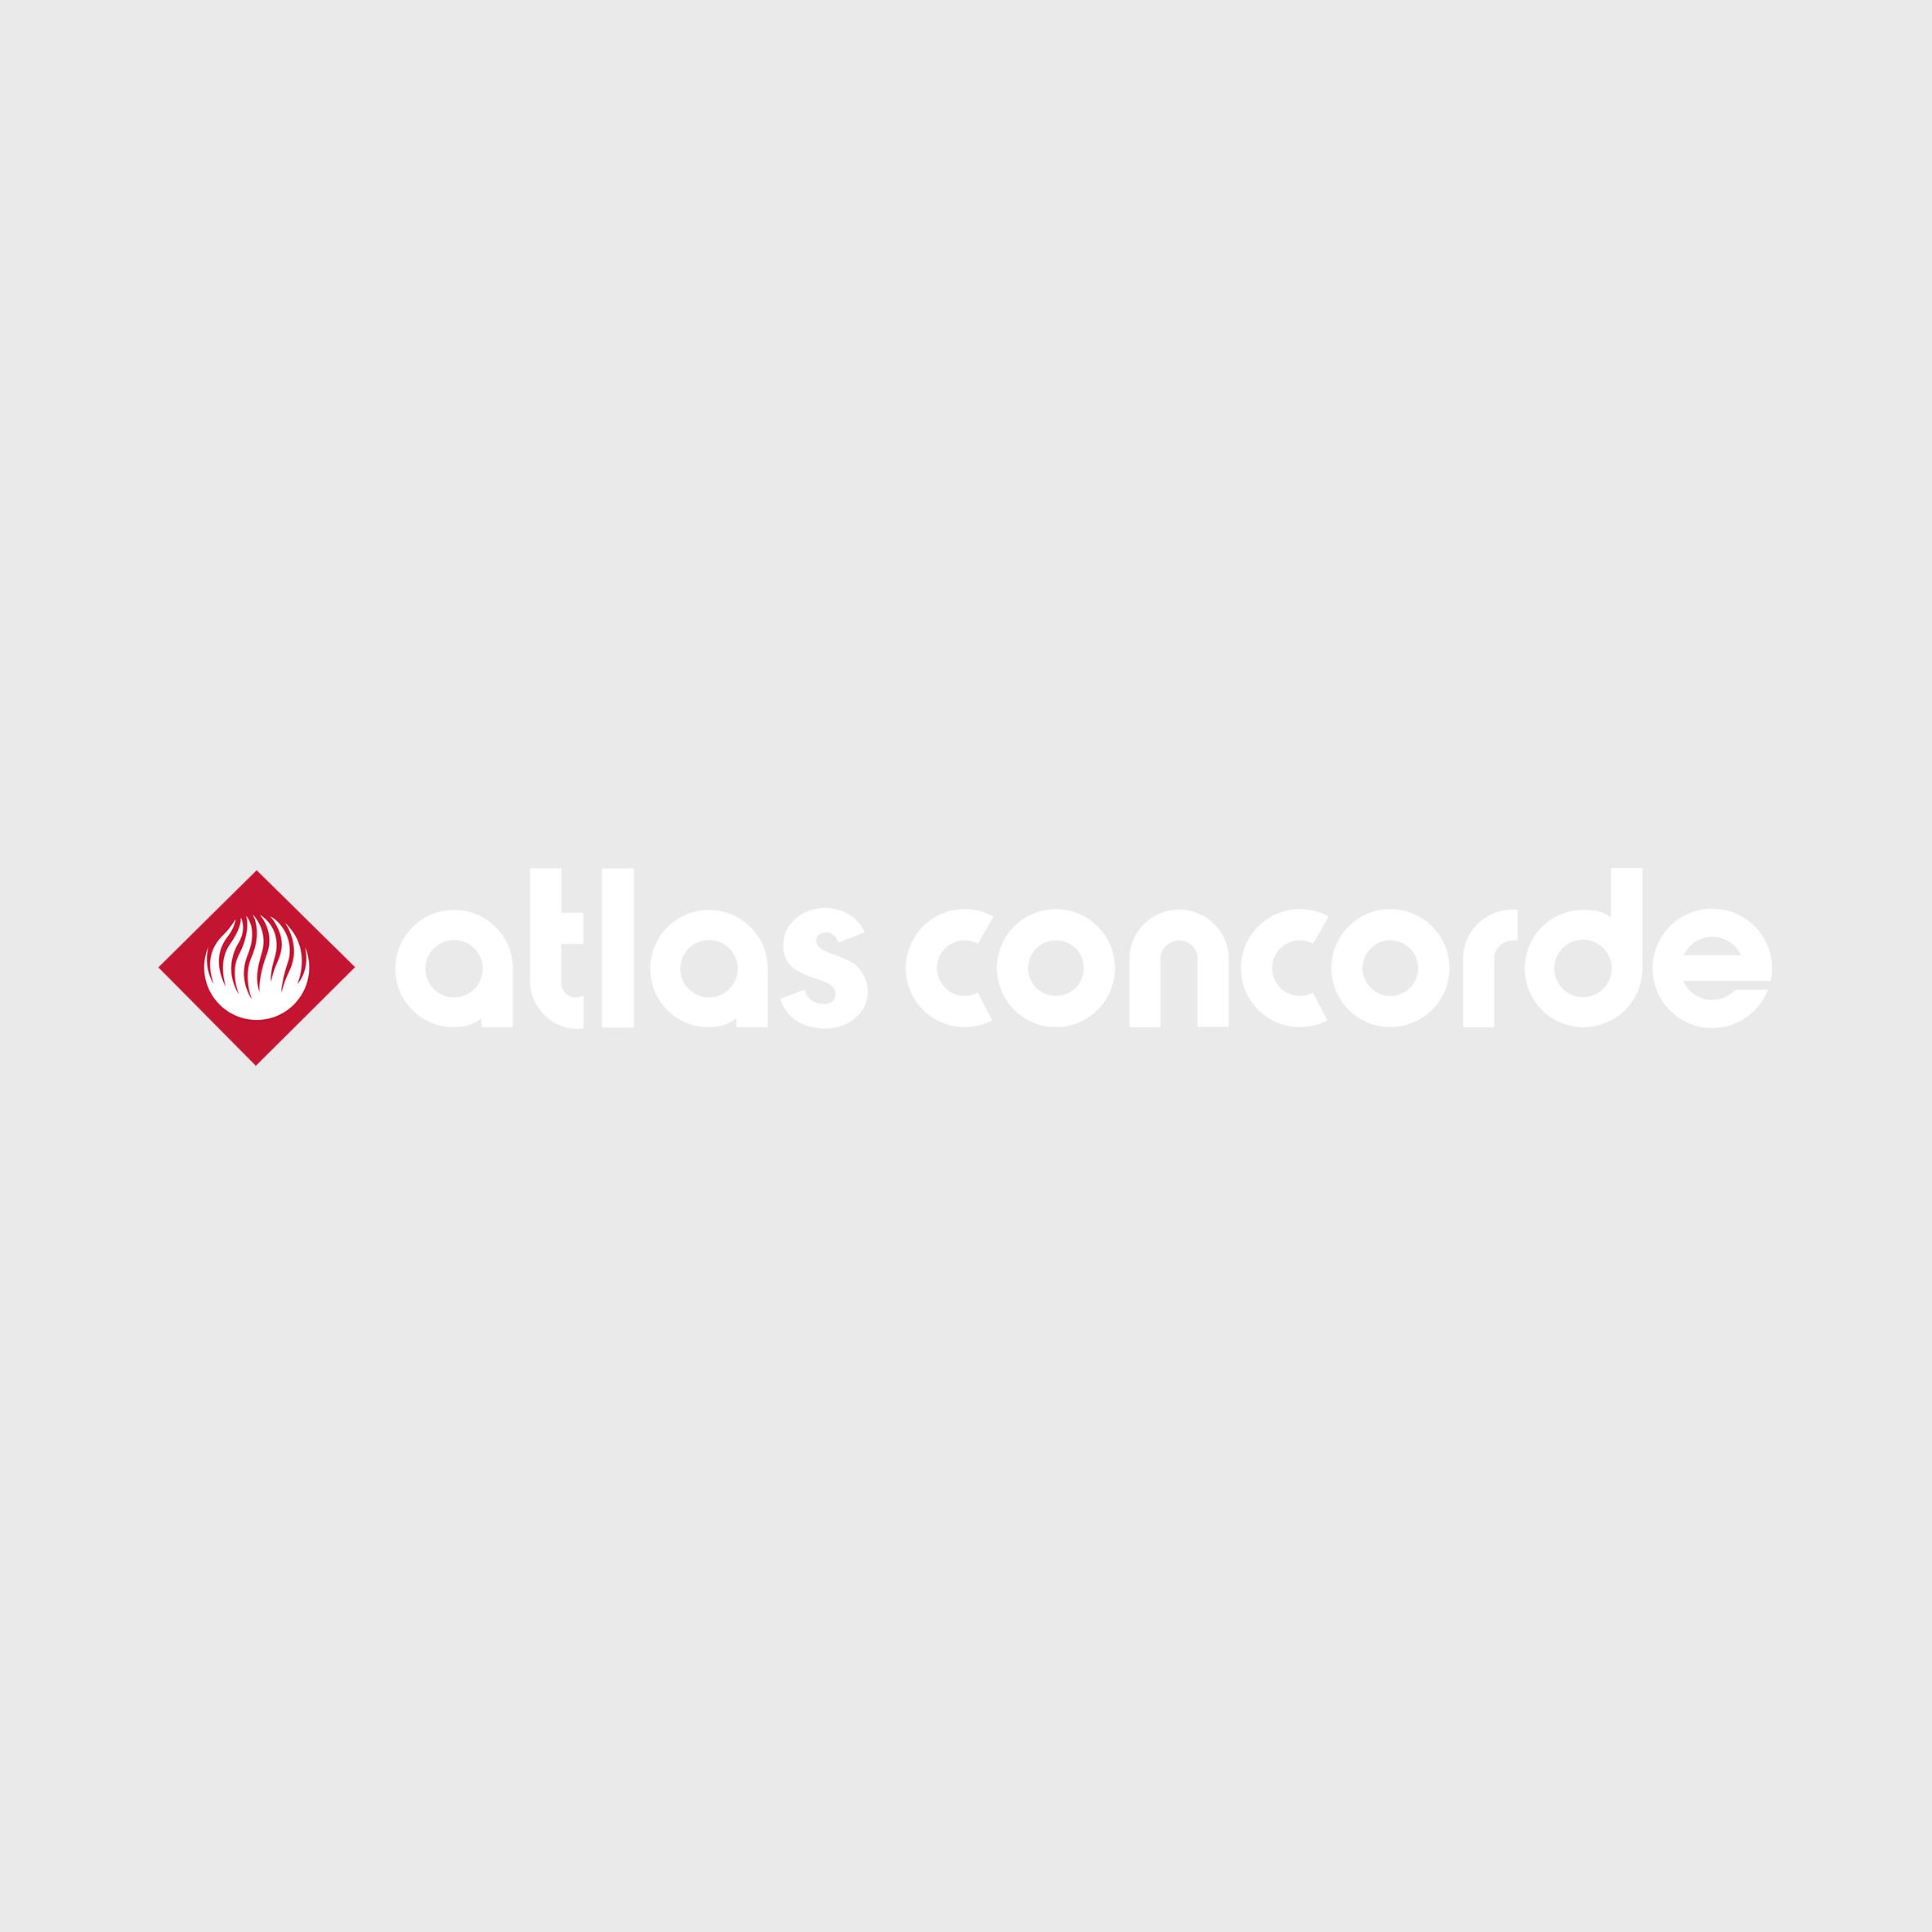 Atlas Concorde at Milan Design Week